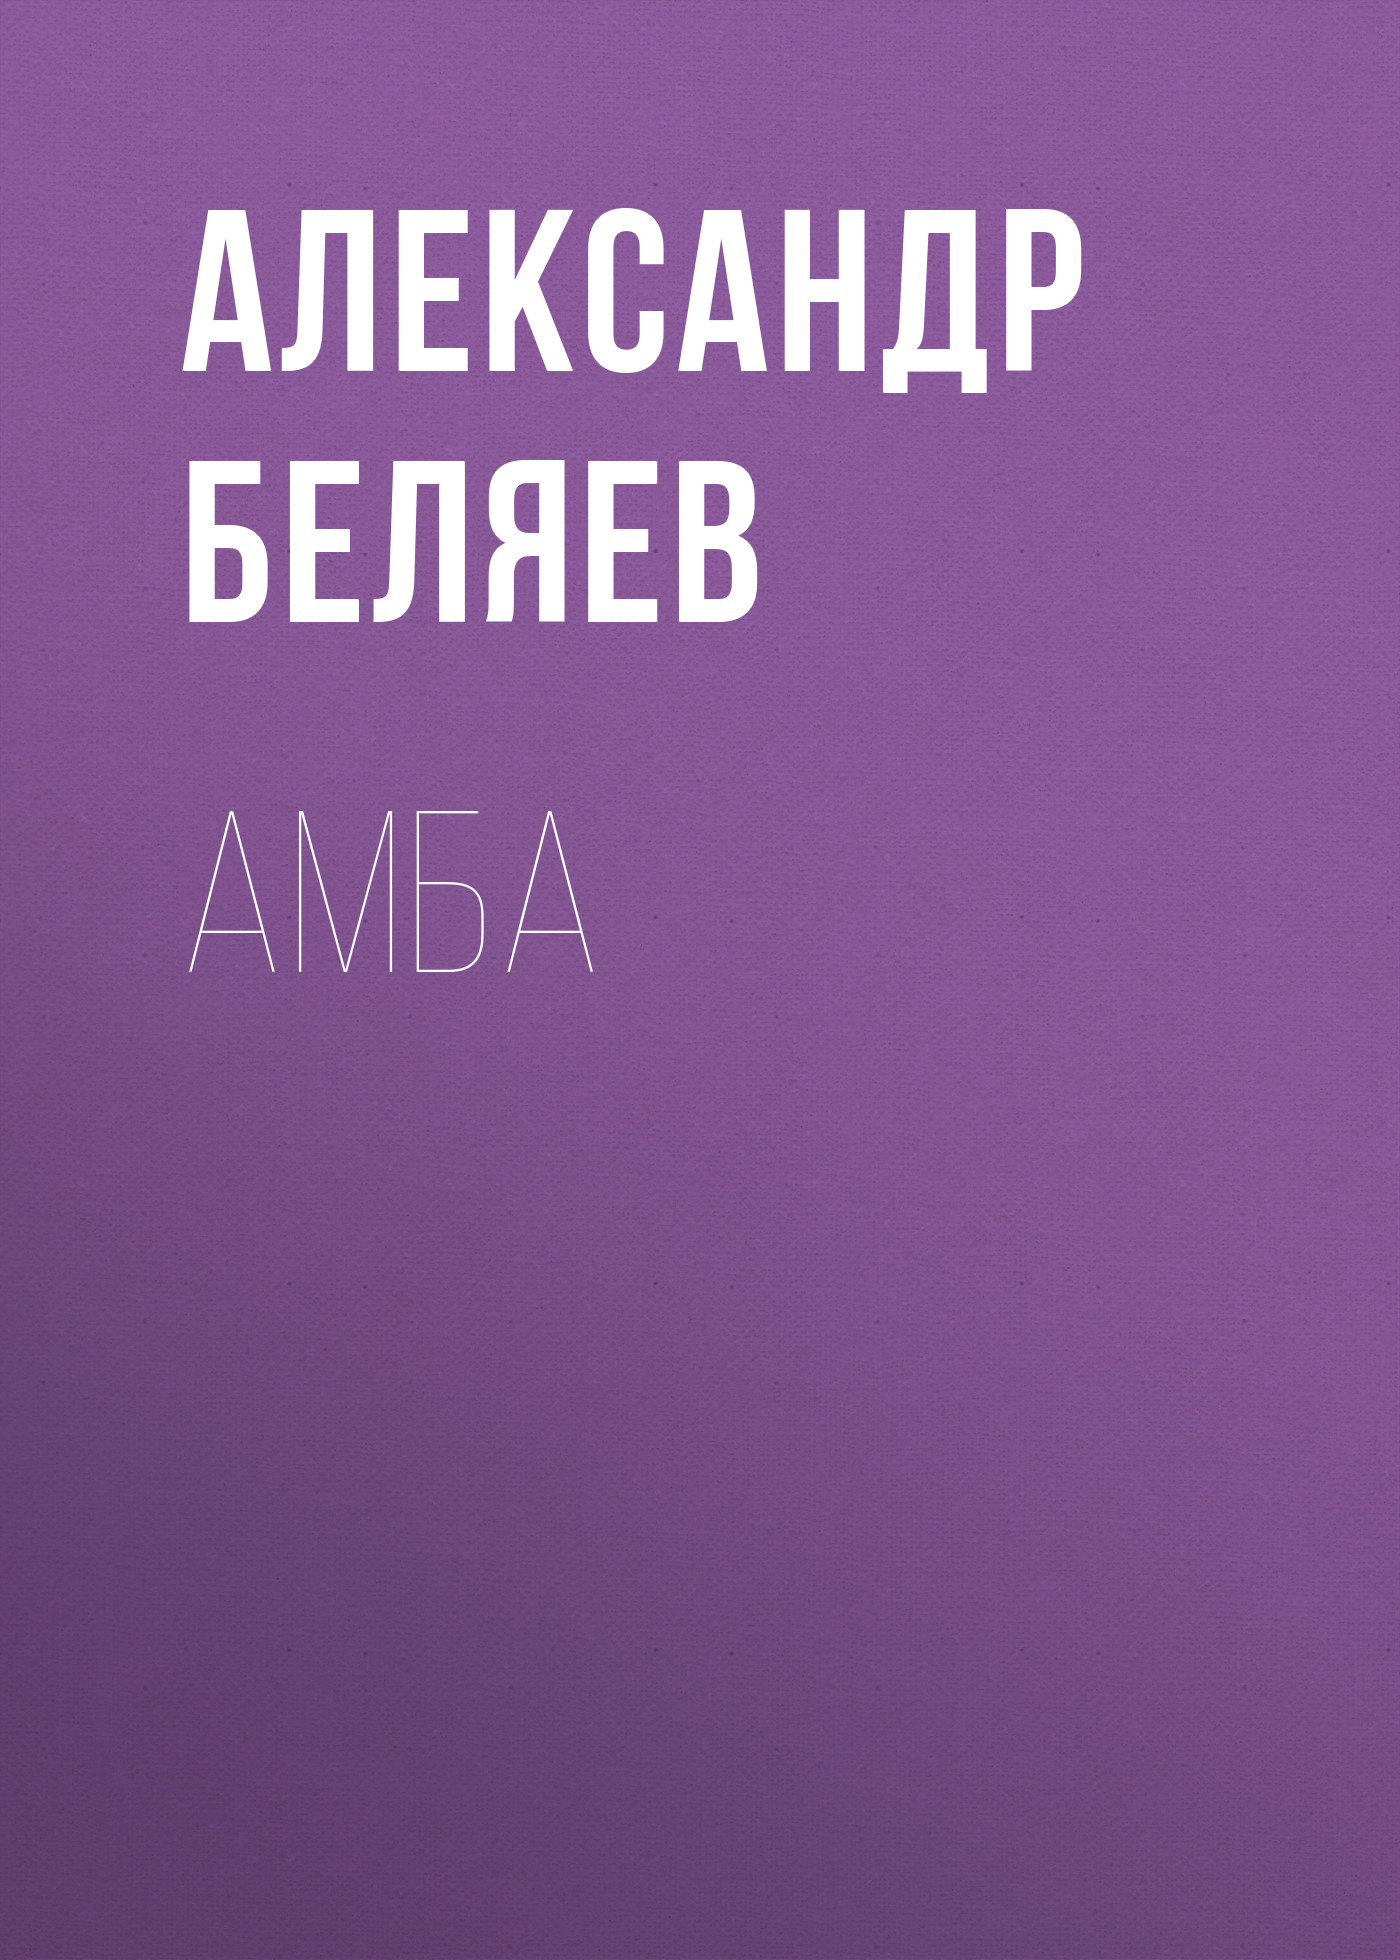 Книга Амба из серии , созданная Александр Беляев, может относится к жанру Рассказы, Научная фантастика. Стоимость электронной книги Амба с идентификатором 127173 составляет 5.99 руб.